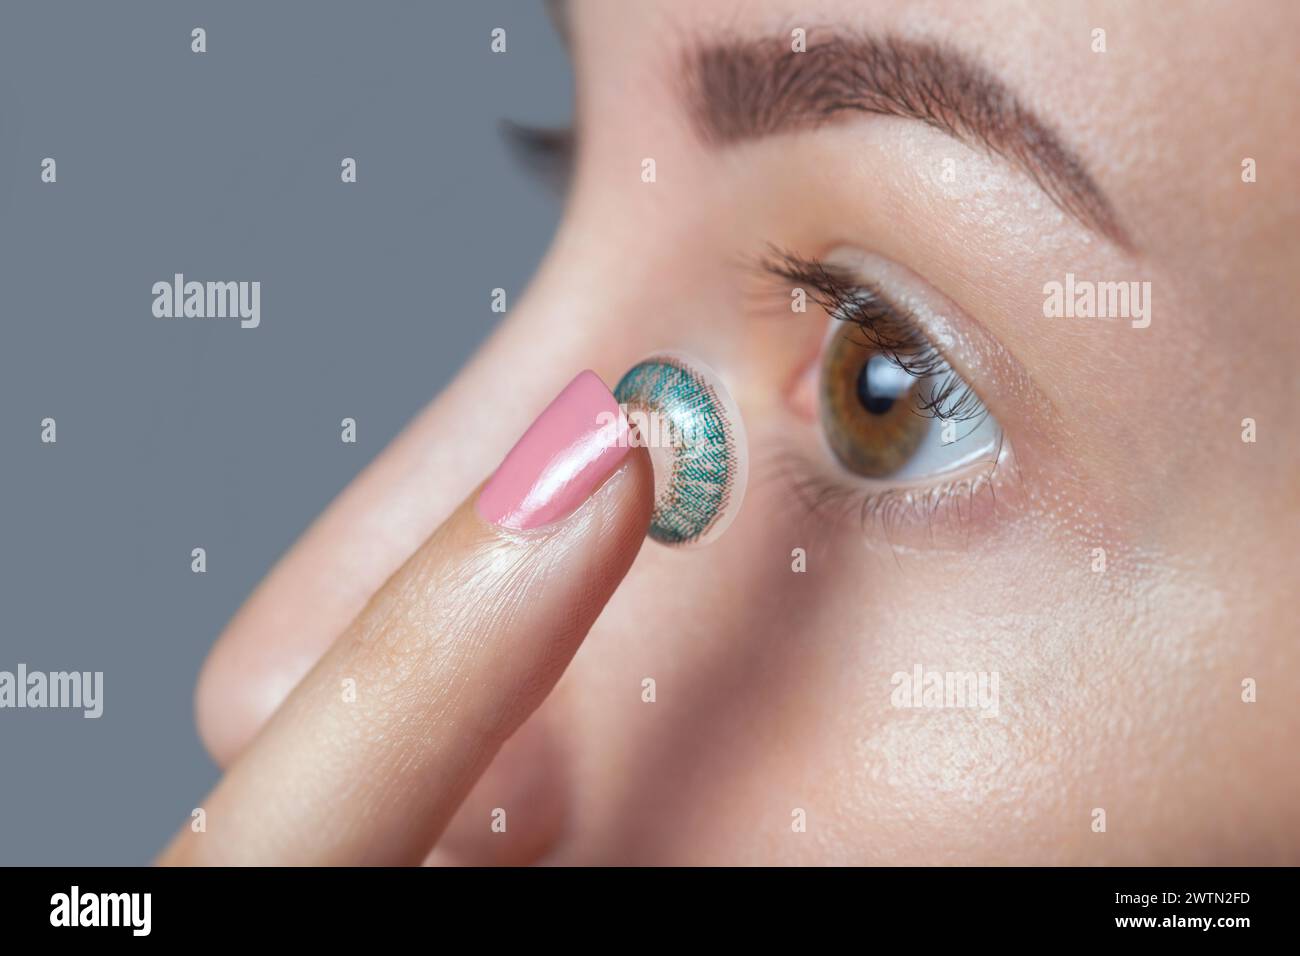 Die Frau hält eine blaue Kontaktlinse am Finger. Augenpflege und die Wahl zwischen den Mitteln zur Verbesserung des Sehens. Stockfoto